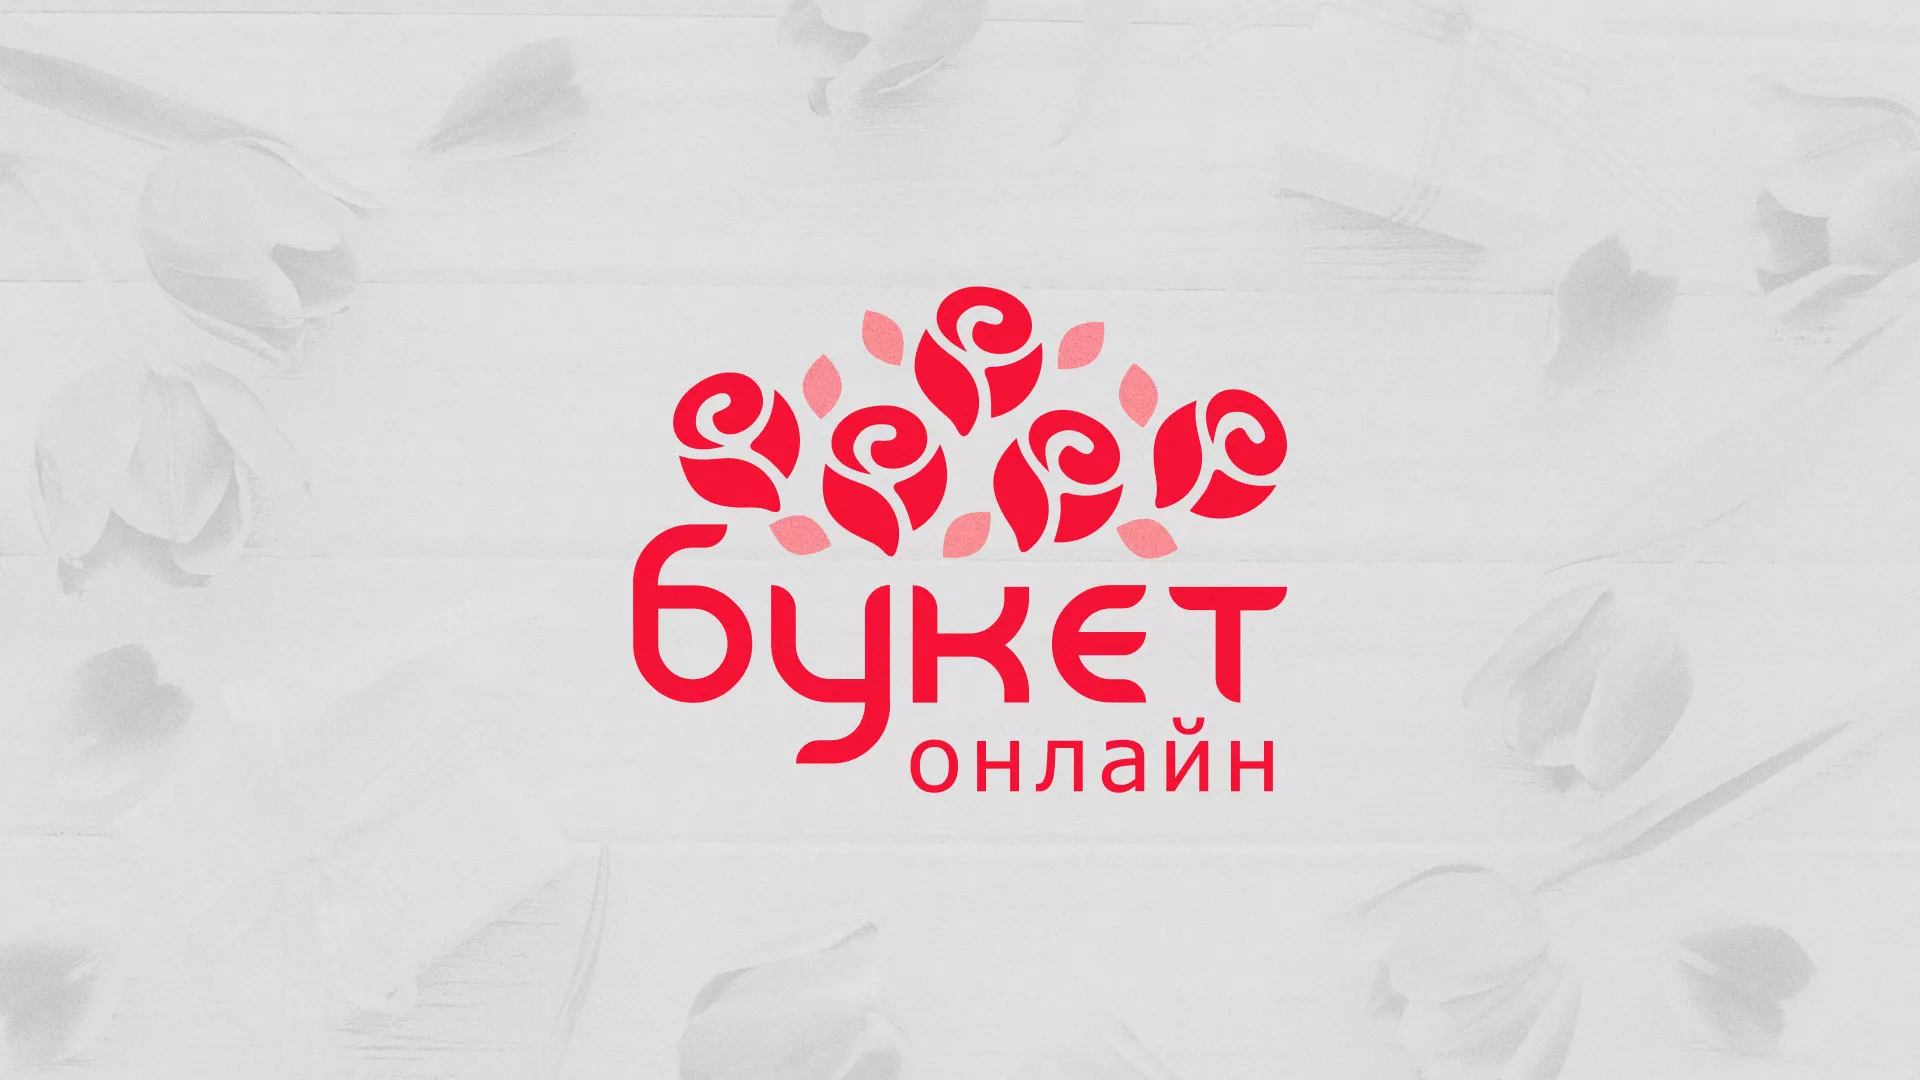 Создание интернет-магазина «Букет-онлайн» по цветам в Шадринске